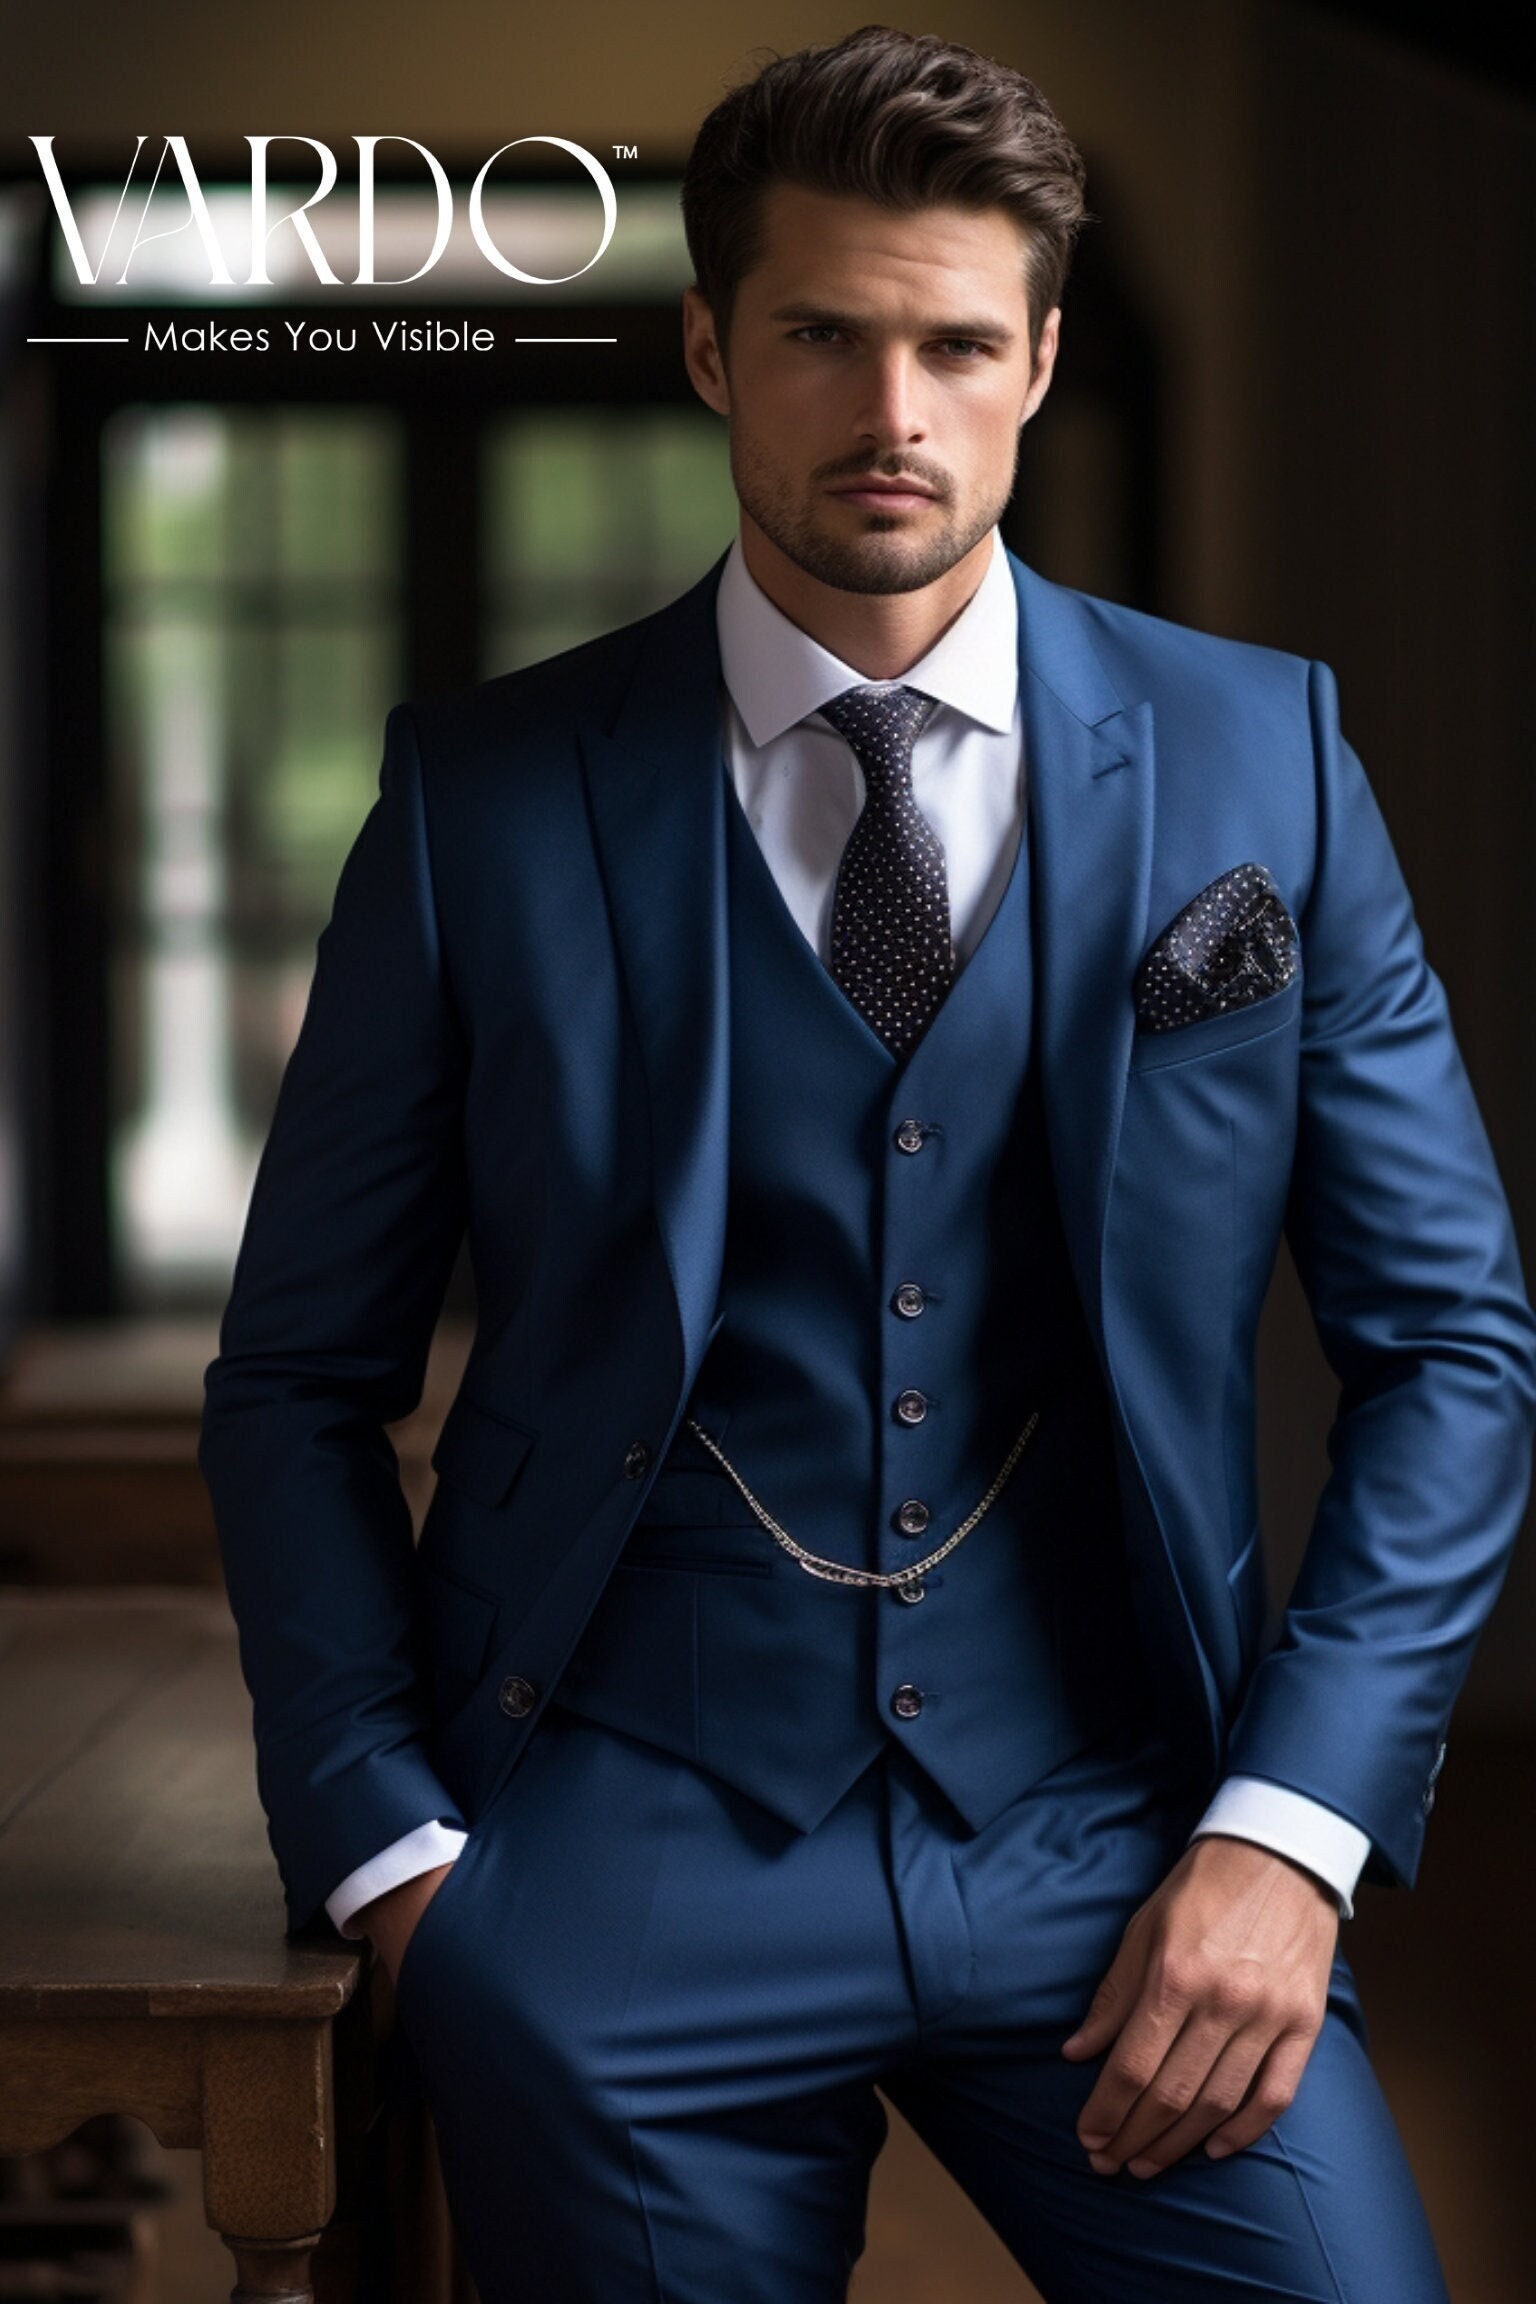 Men's Wedding Suits & Outfits | The Black Tux Blog